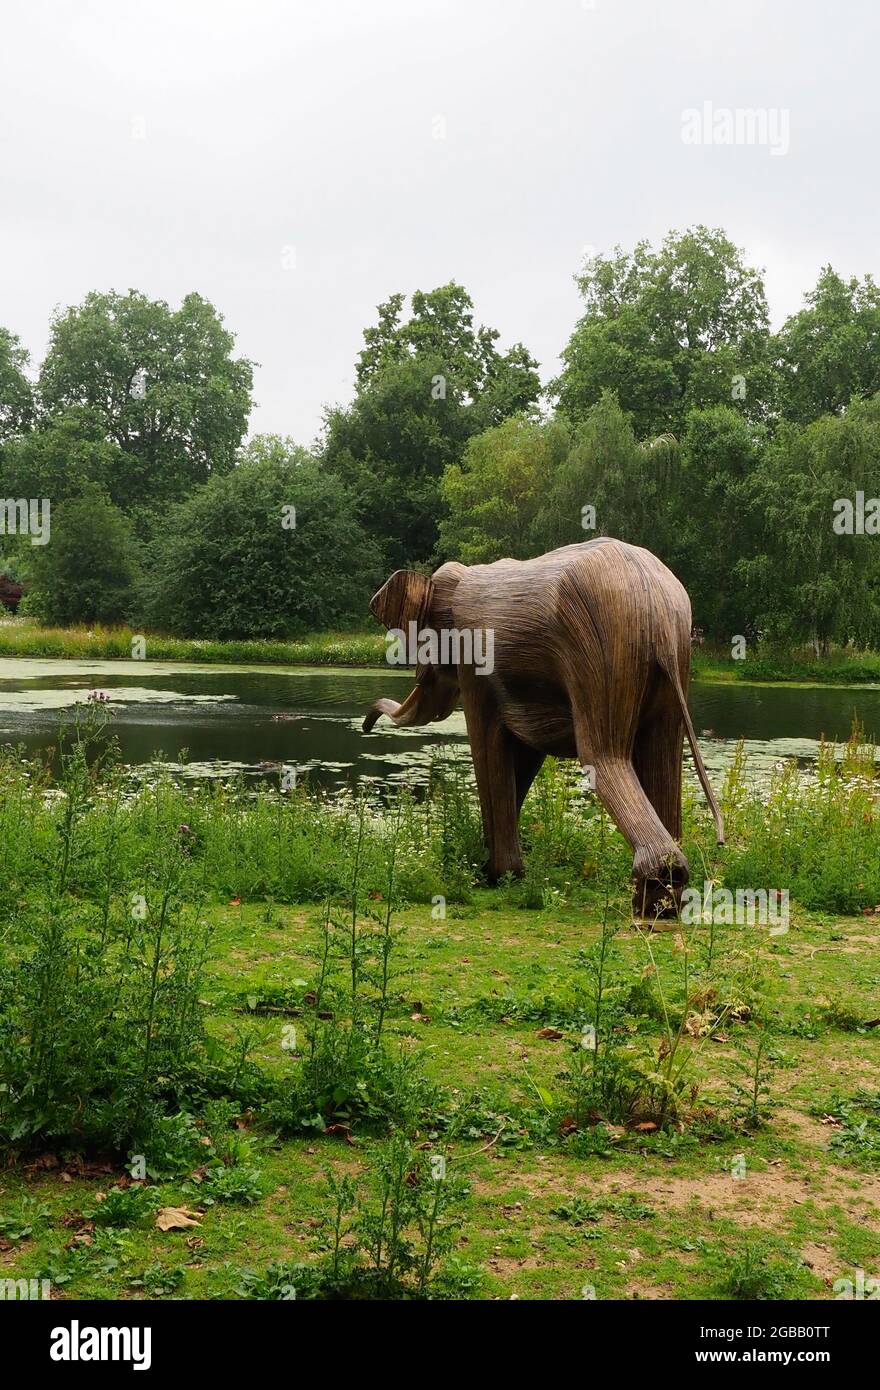 Elefantenskulptur aus invasiven Pflanzen, die auf dem Weg zum Wasser aus einem See in einem Park gesehen werden Stockfoto